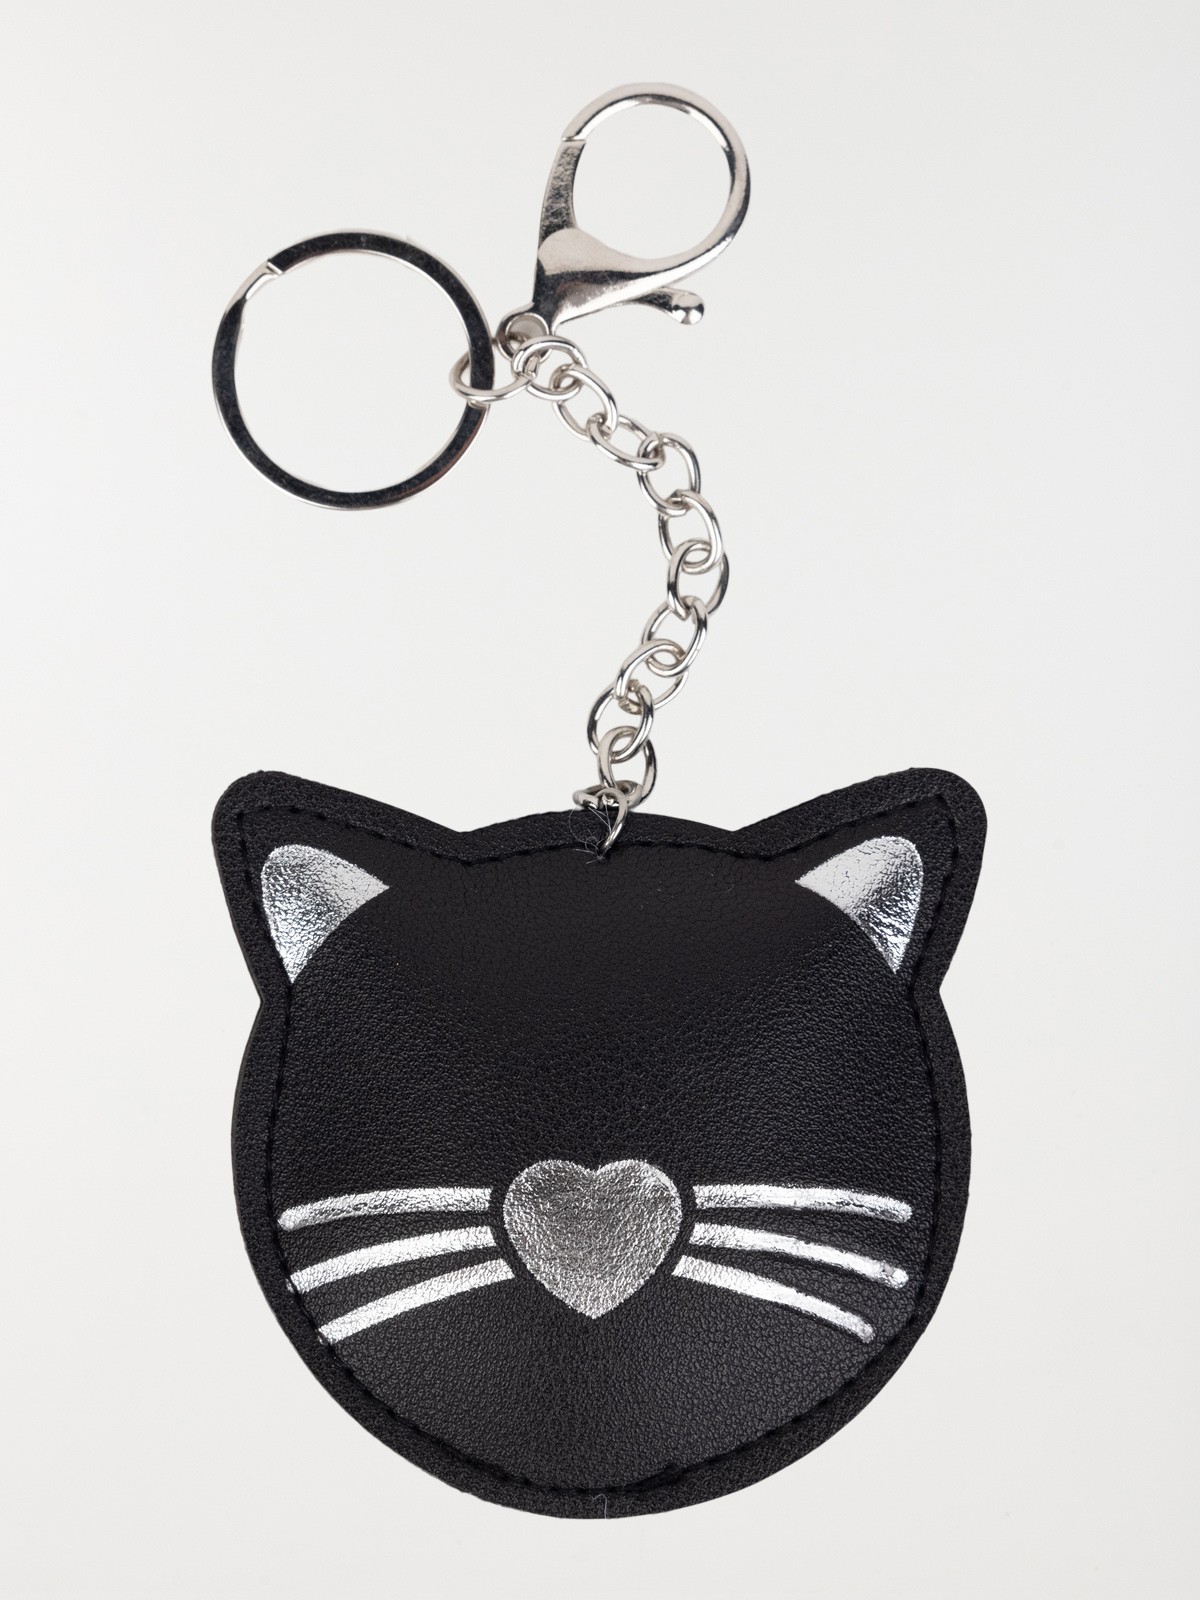 porte-clés chat noir